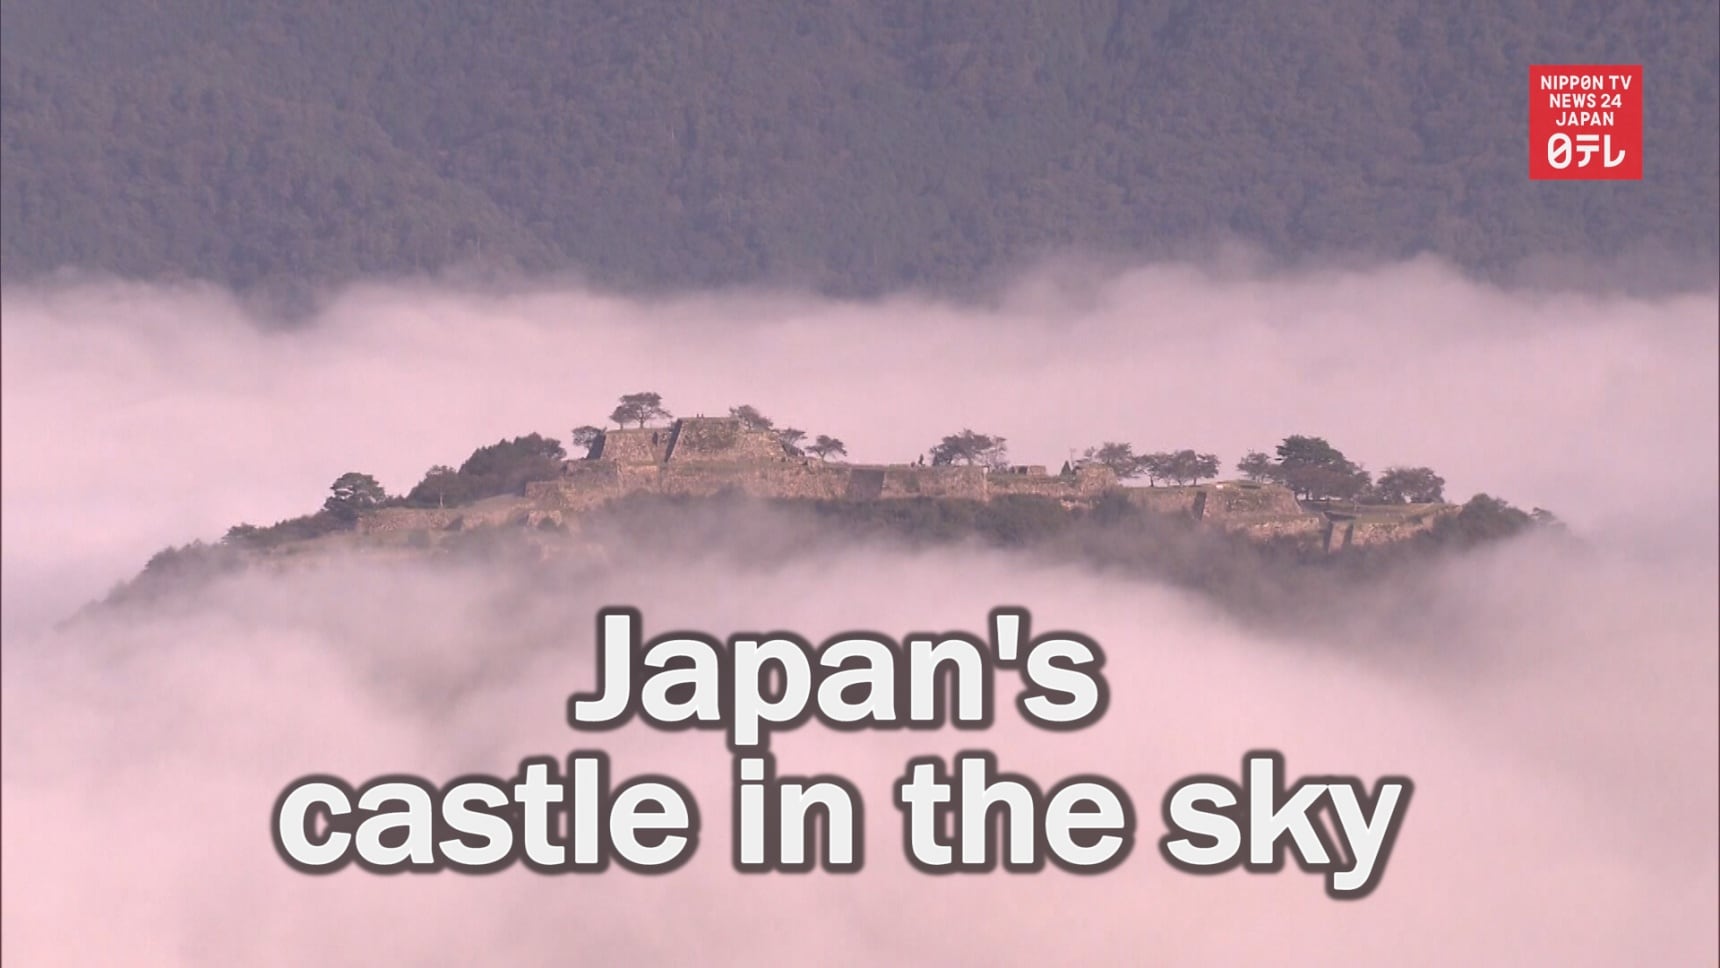 Soar in the Sky at Japan's Castle in the Sky